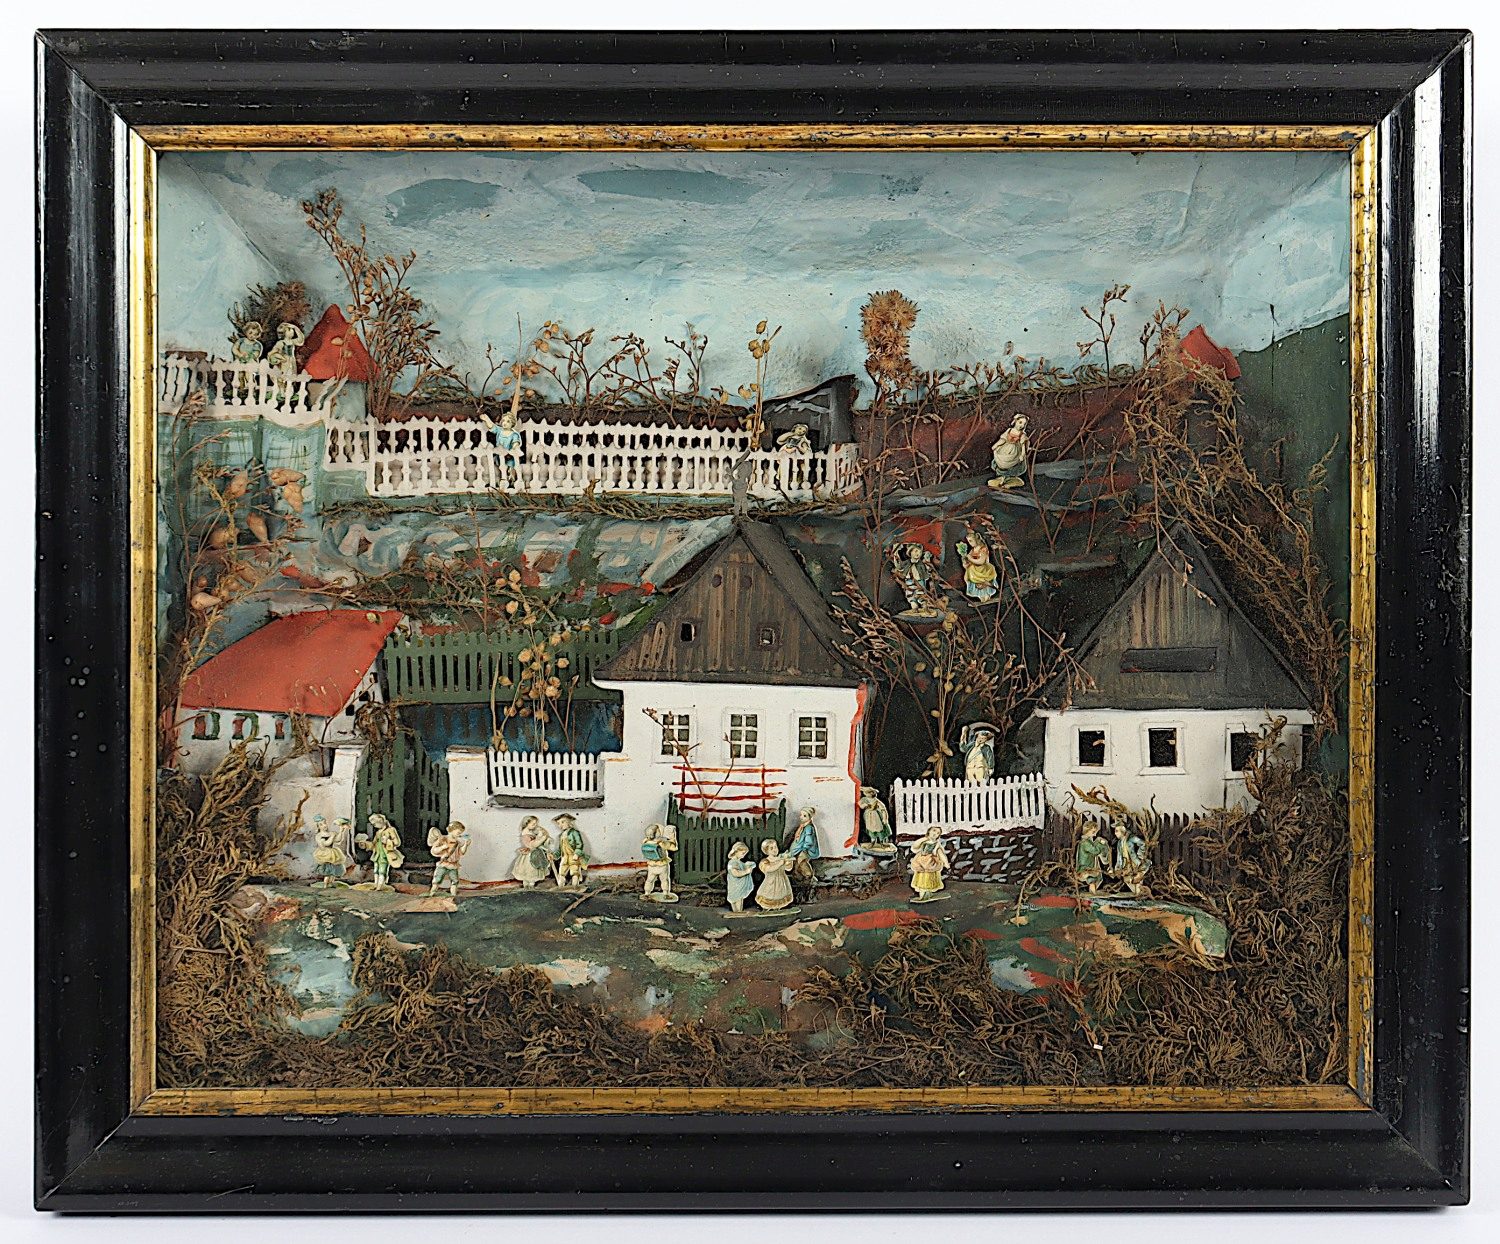 DIORAMA, Landschaft mit Gebäuden und Figuren, farbig bemalte und bedruckte Pappe und Papier, unter